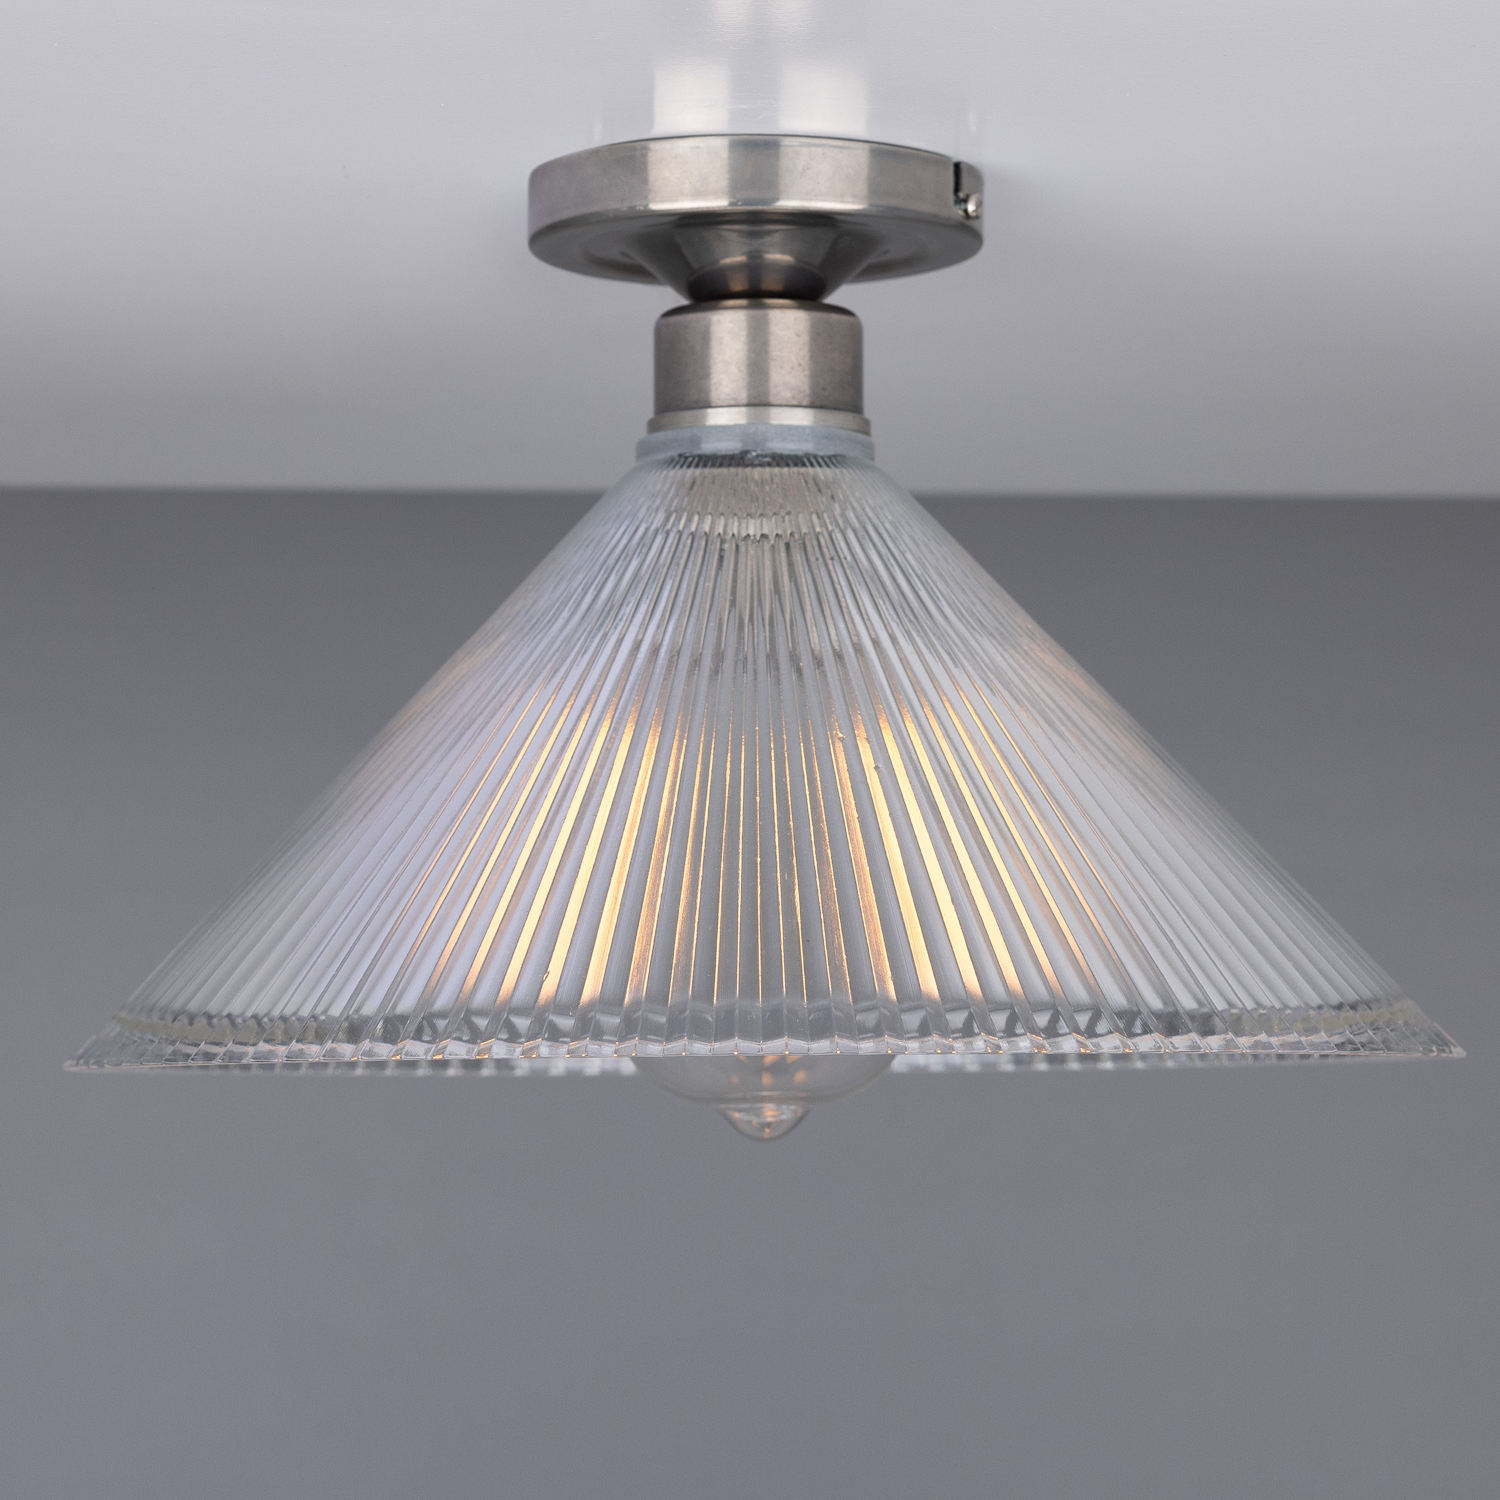 Deckenlampe mit prismatischem Kegel-Glasschirm Ø 30 cm: Alt-silbern patiniert